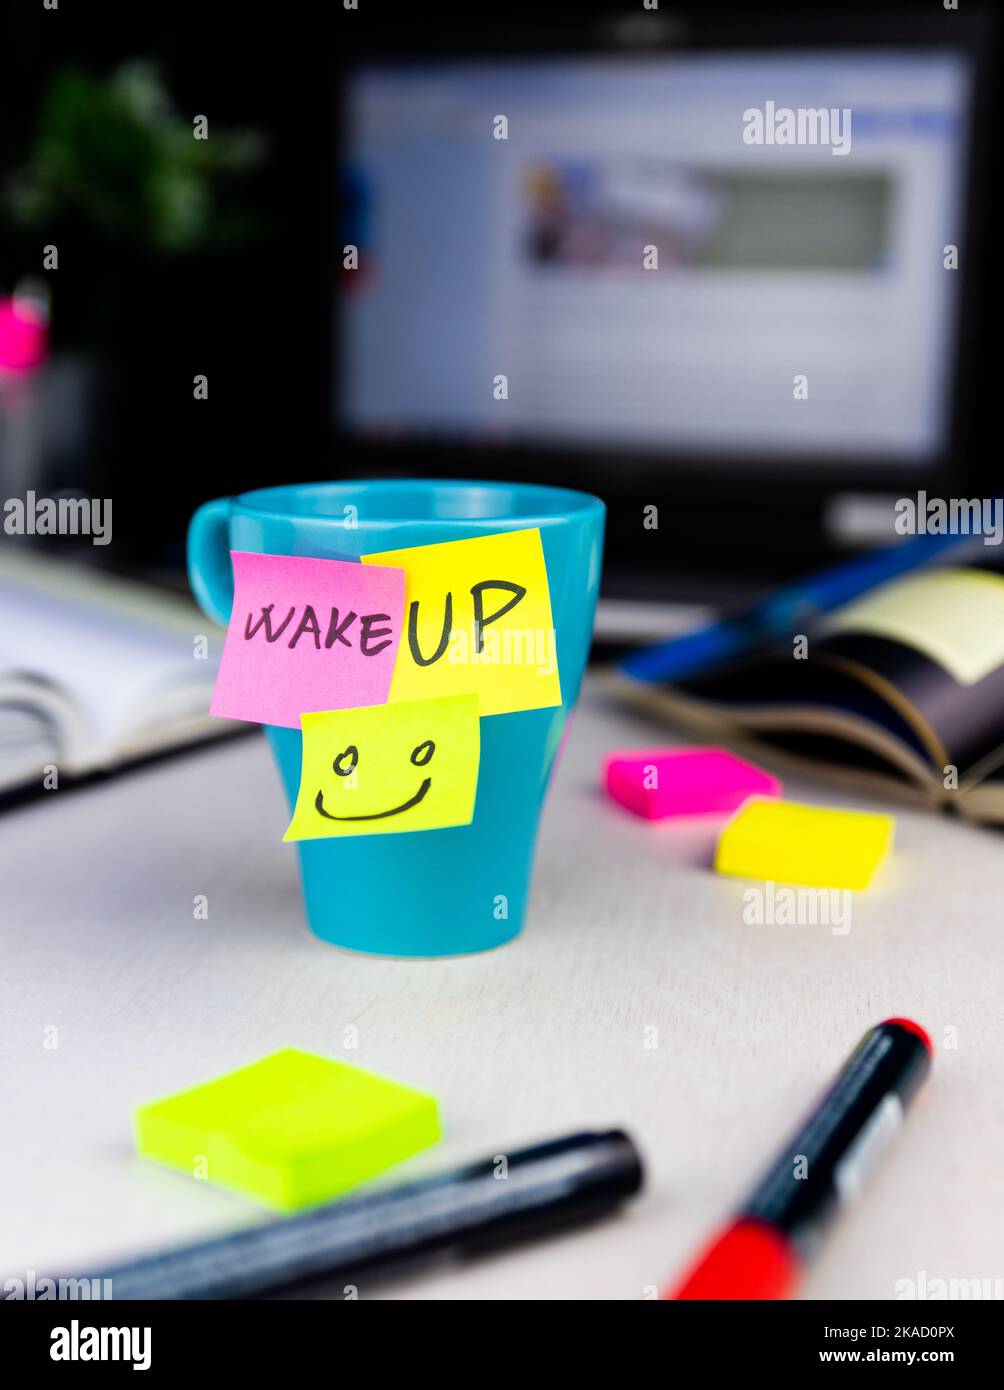 Des notes adhésives sur une tasse à café au bureau. Réveillez-vous et souriez. Commencez votre journée par des pensées positives Banque D'Images